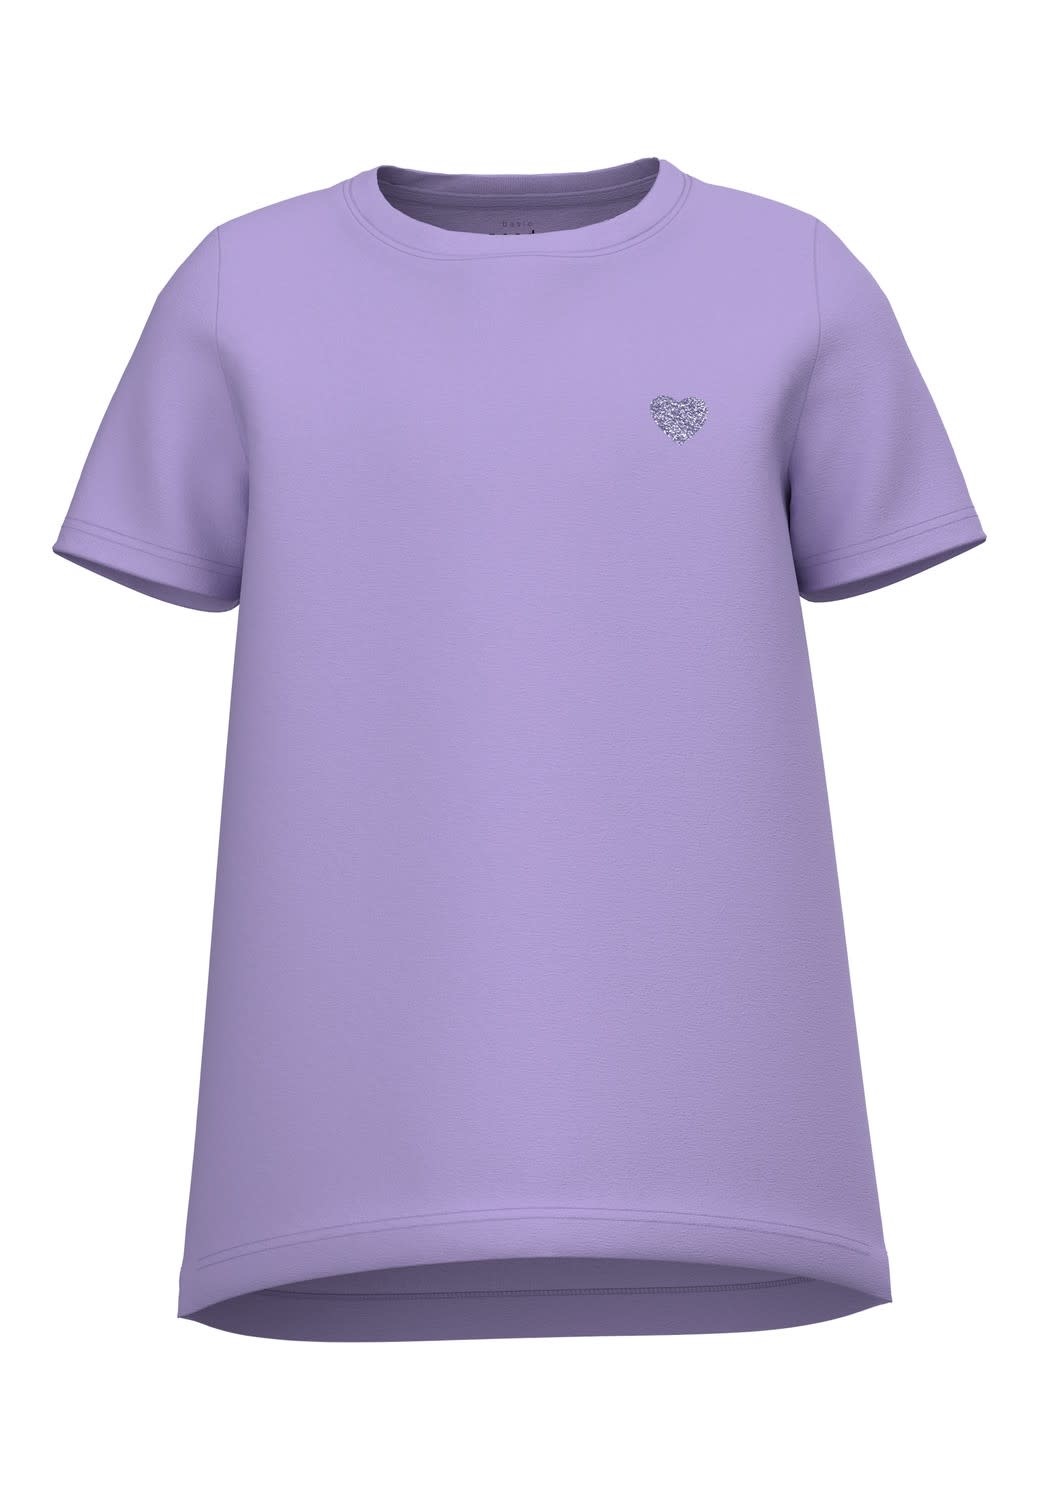 Mantsjoerije heilige preambule Basis paarse t-shirt van Name It | hejsan.be - Hejsan Hoppsan